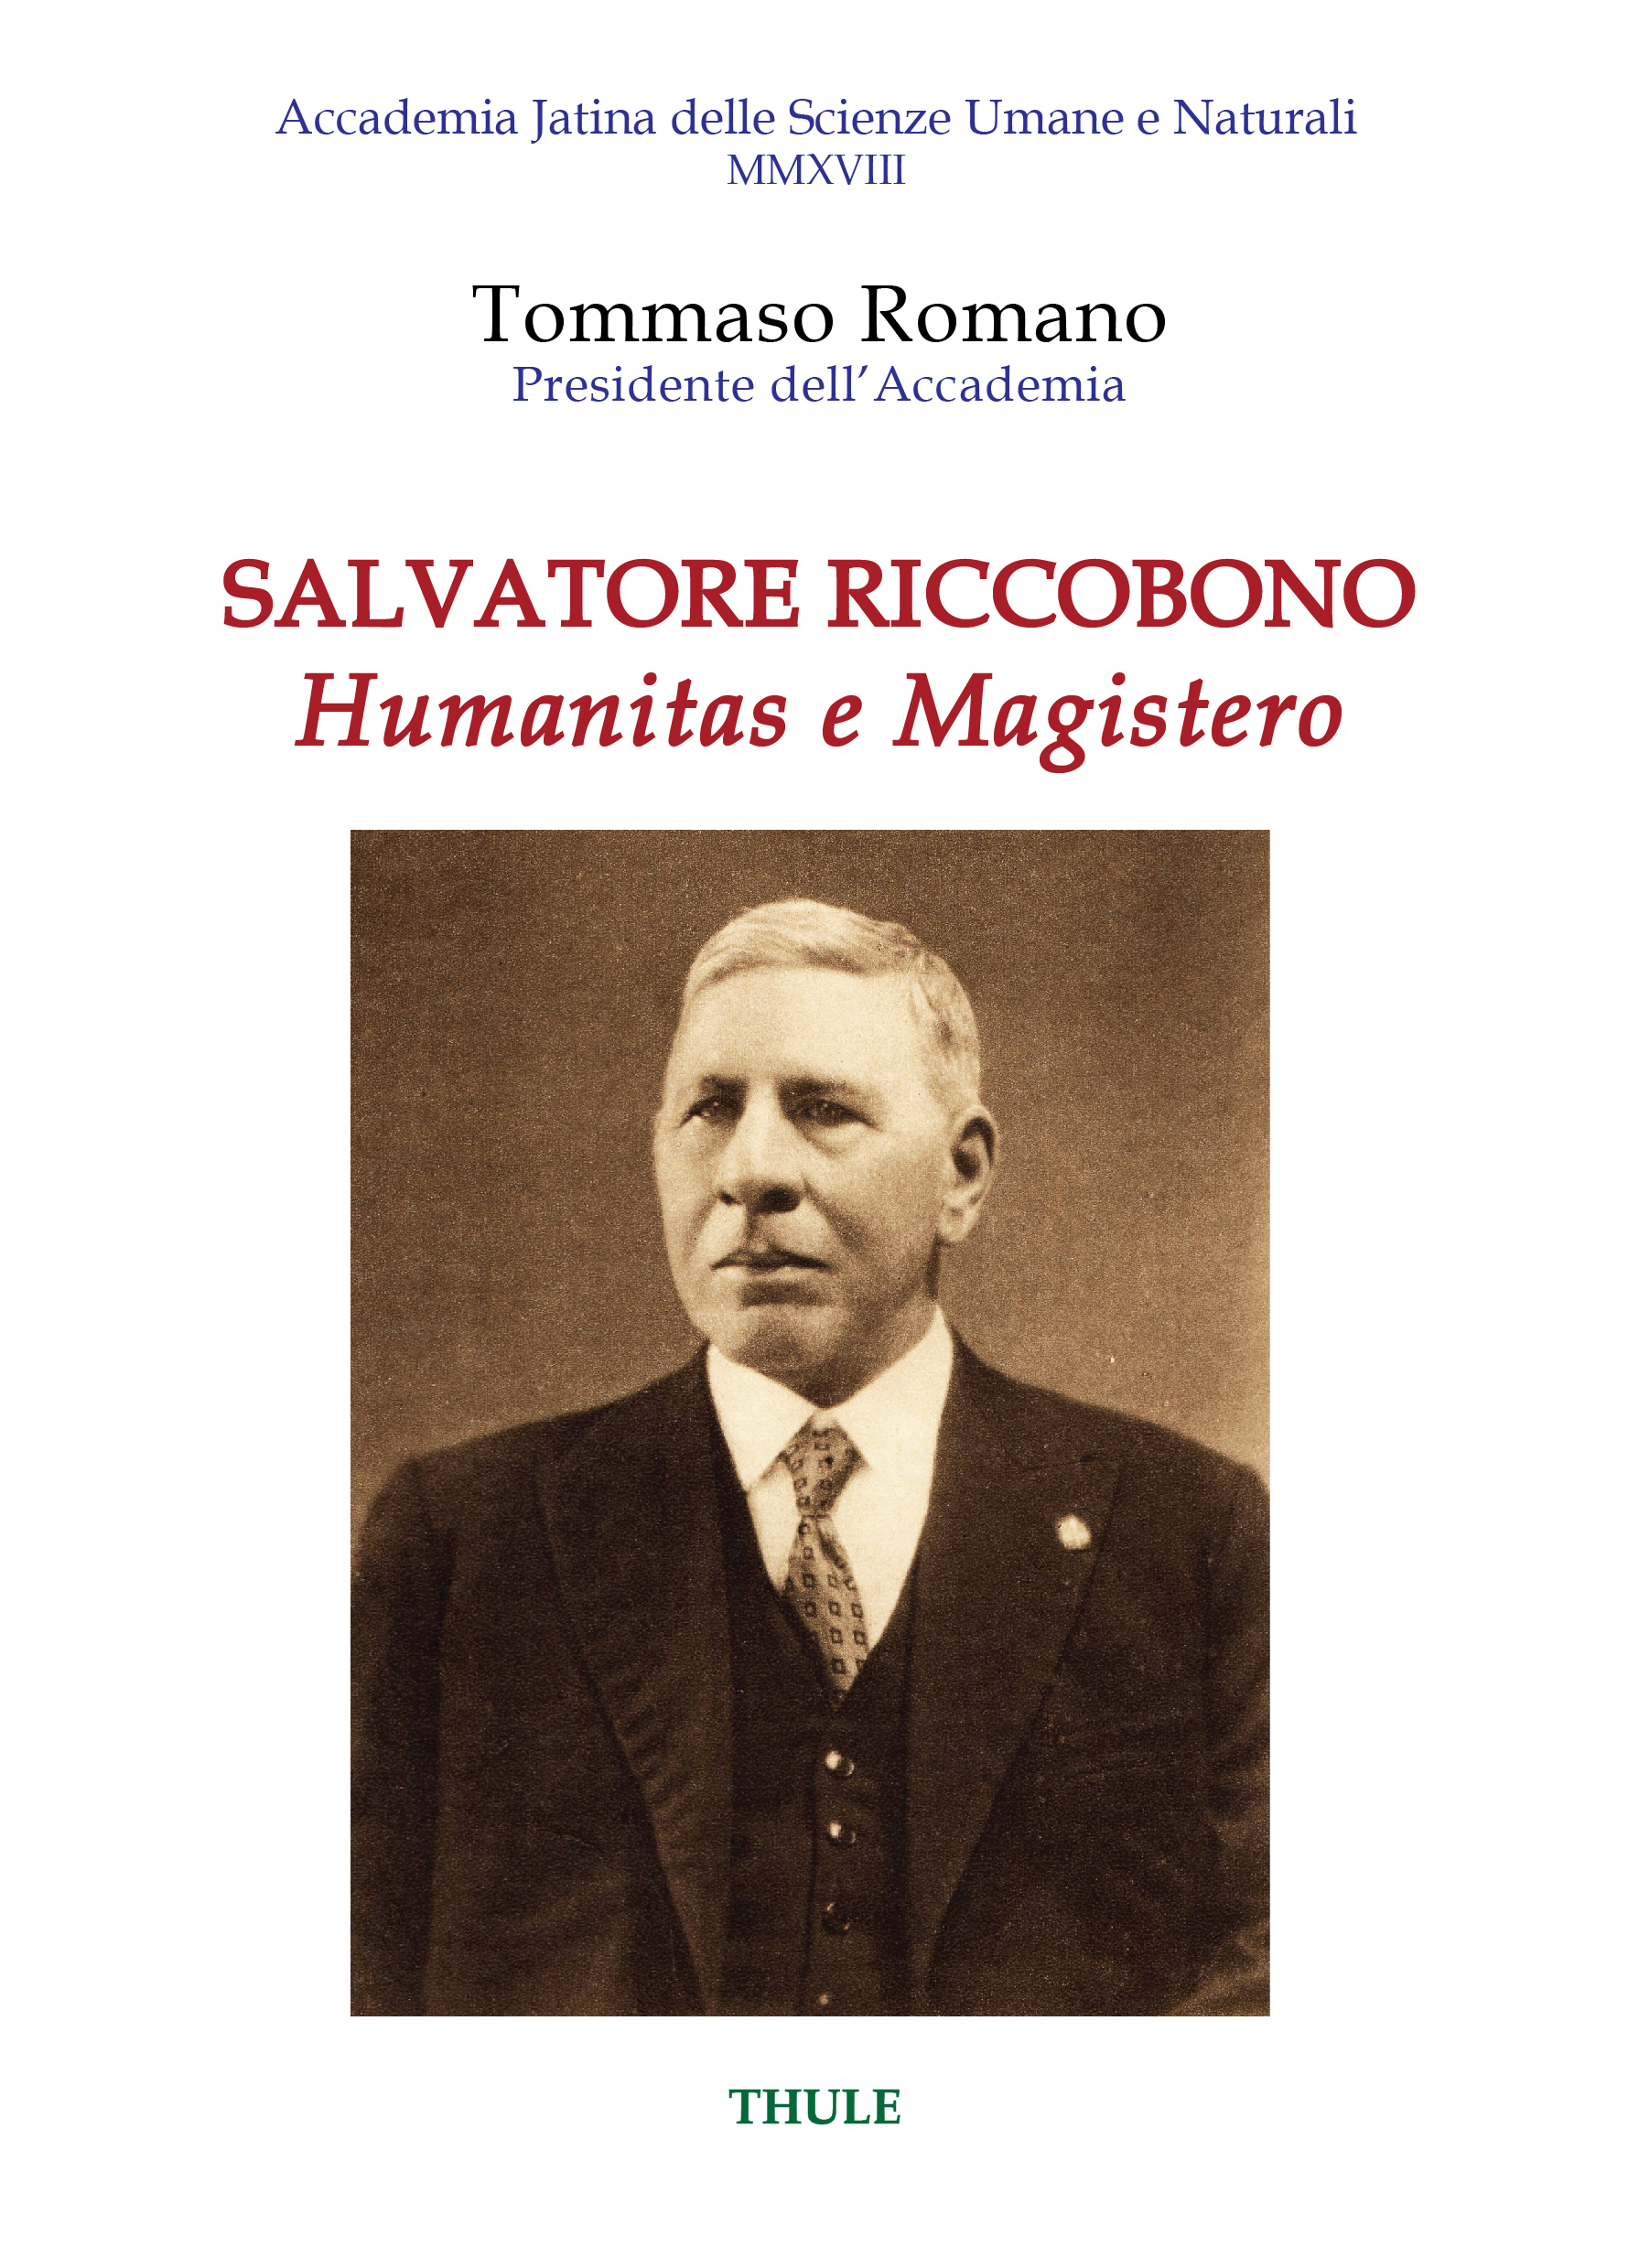 “Salvatore Riccobono: l’humanitas e il magistero” di Tommaso Romano